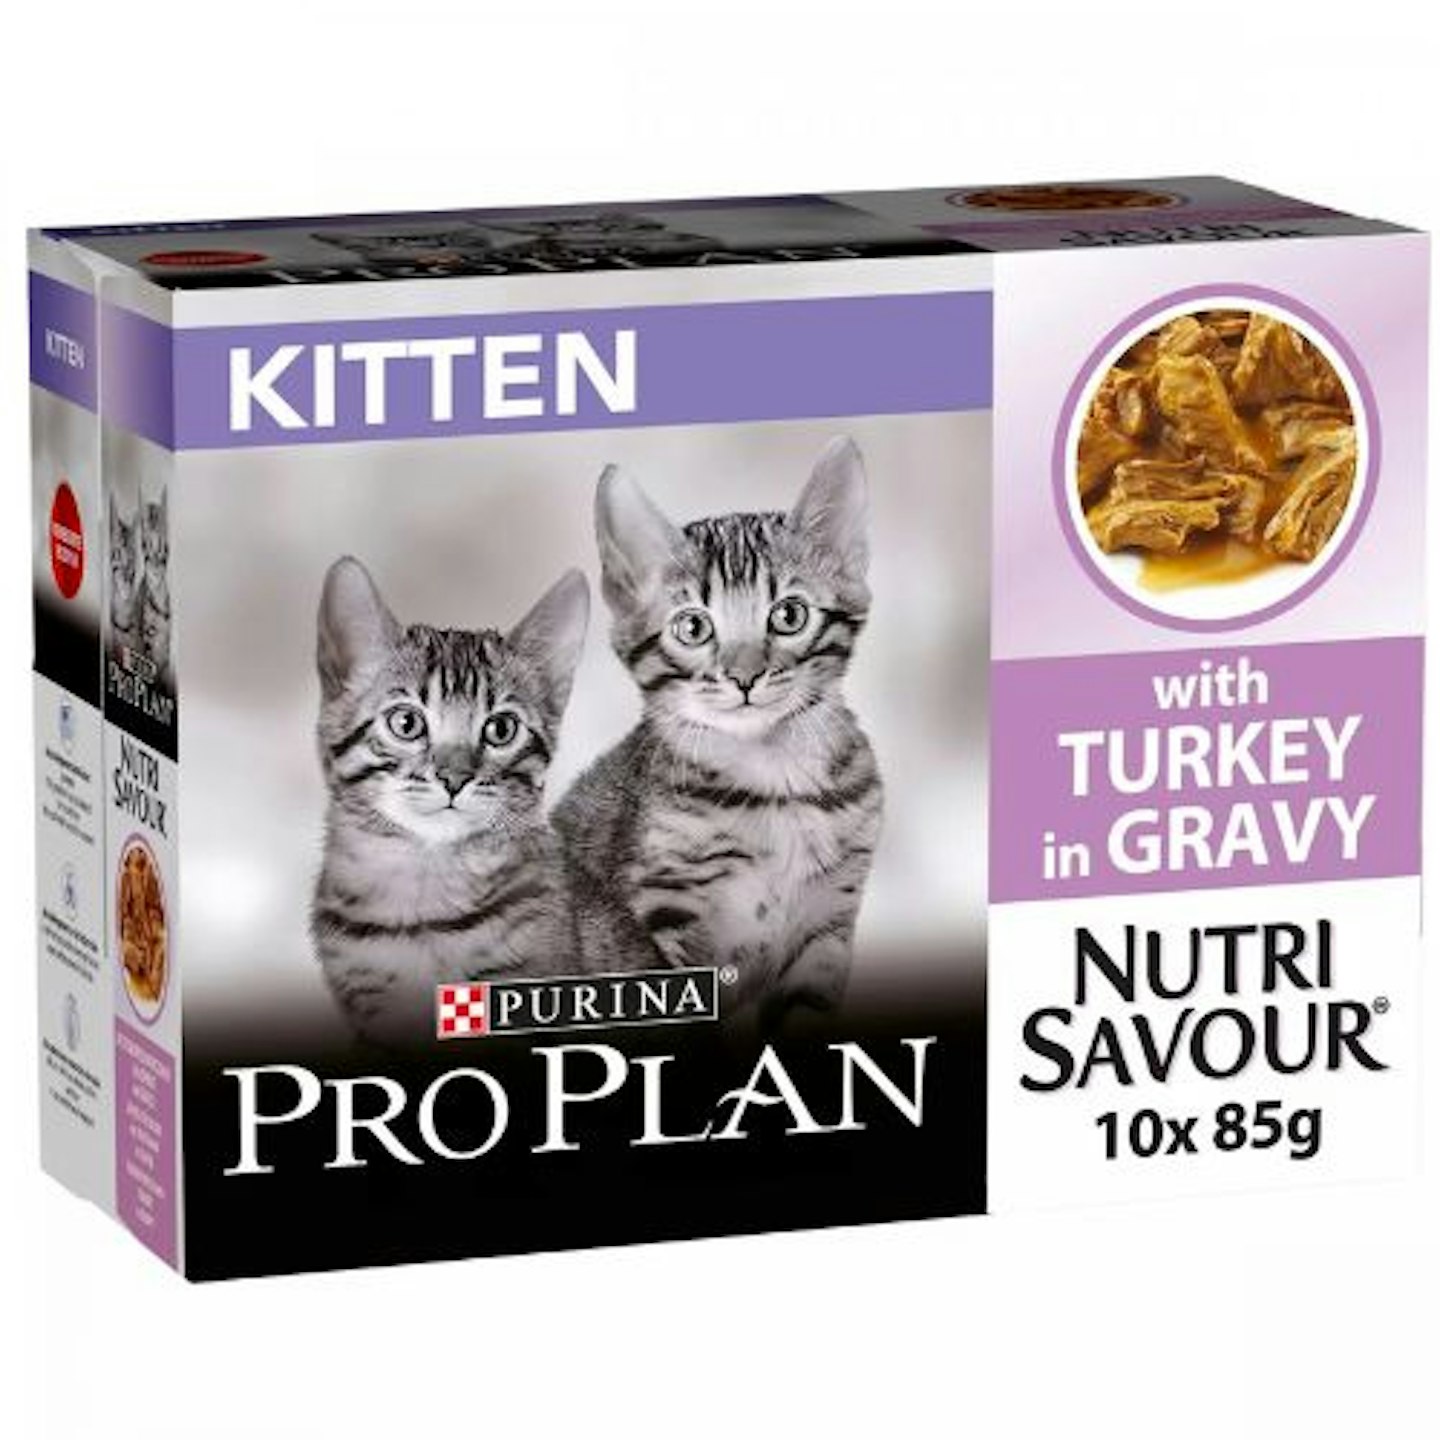 Pro Plan Nutrisavour Wet Kitten Food Turkey 10x85g Pouches